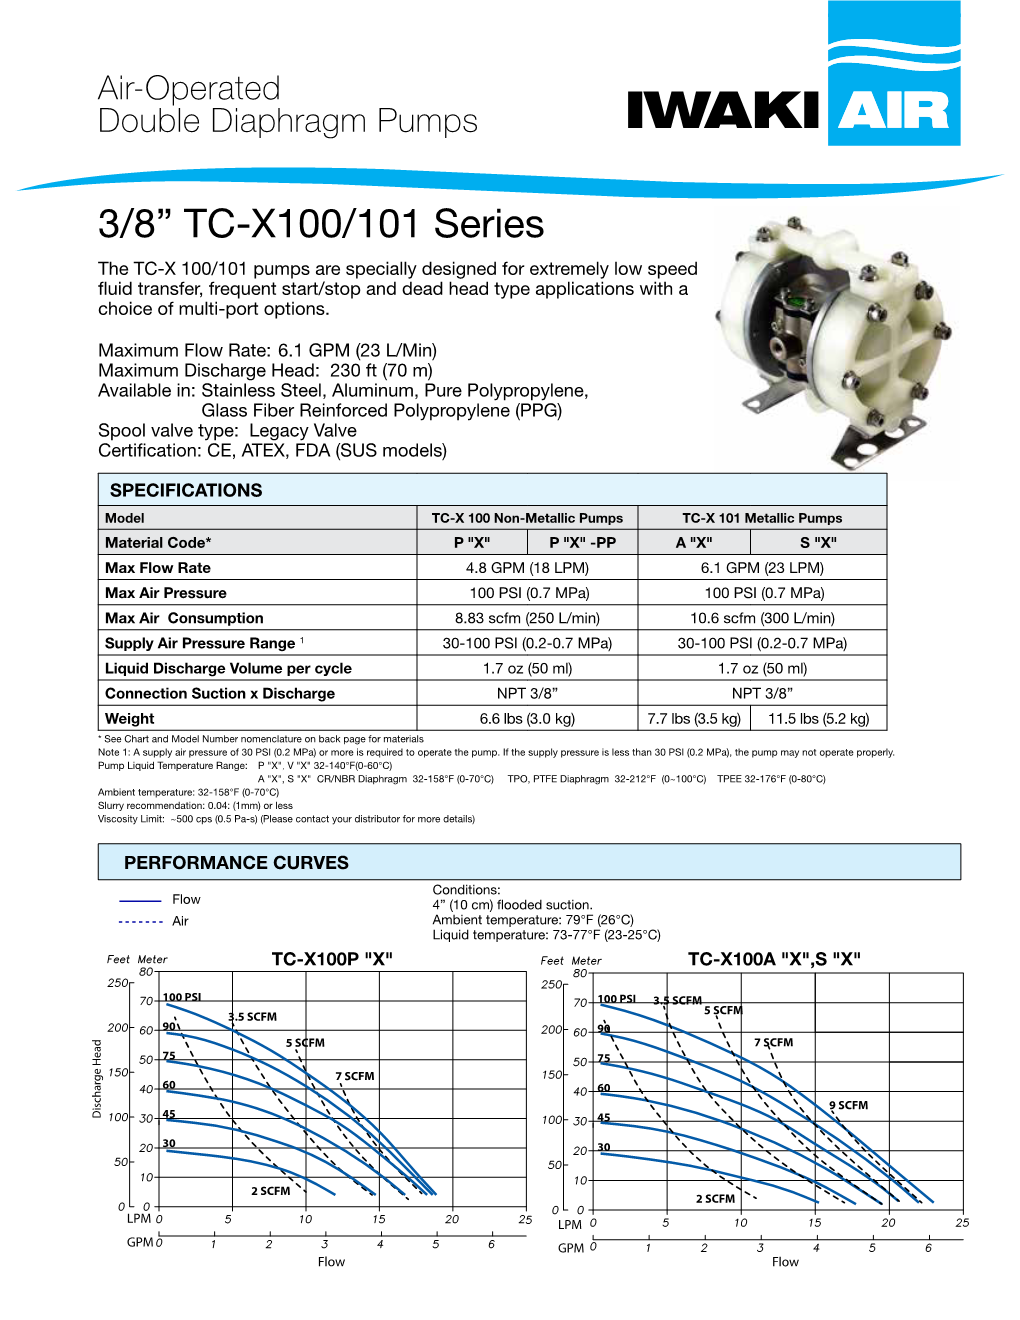 3/8” TC-X100/101 Series